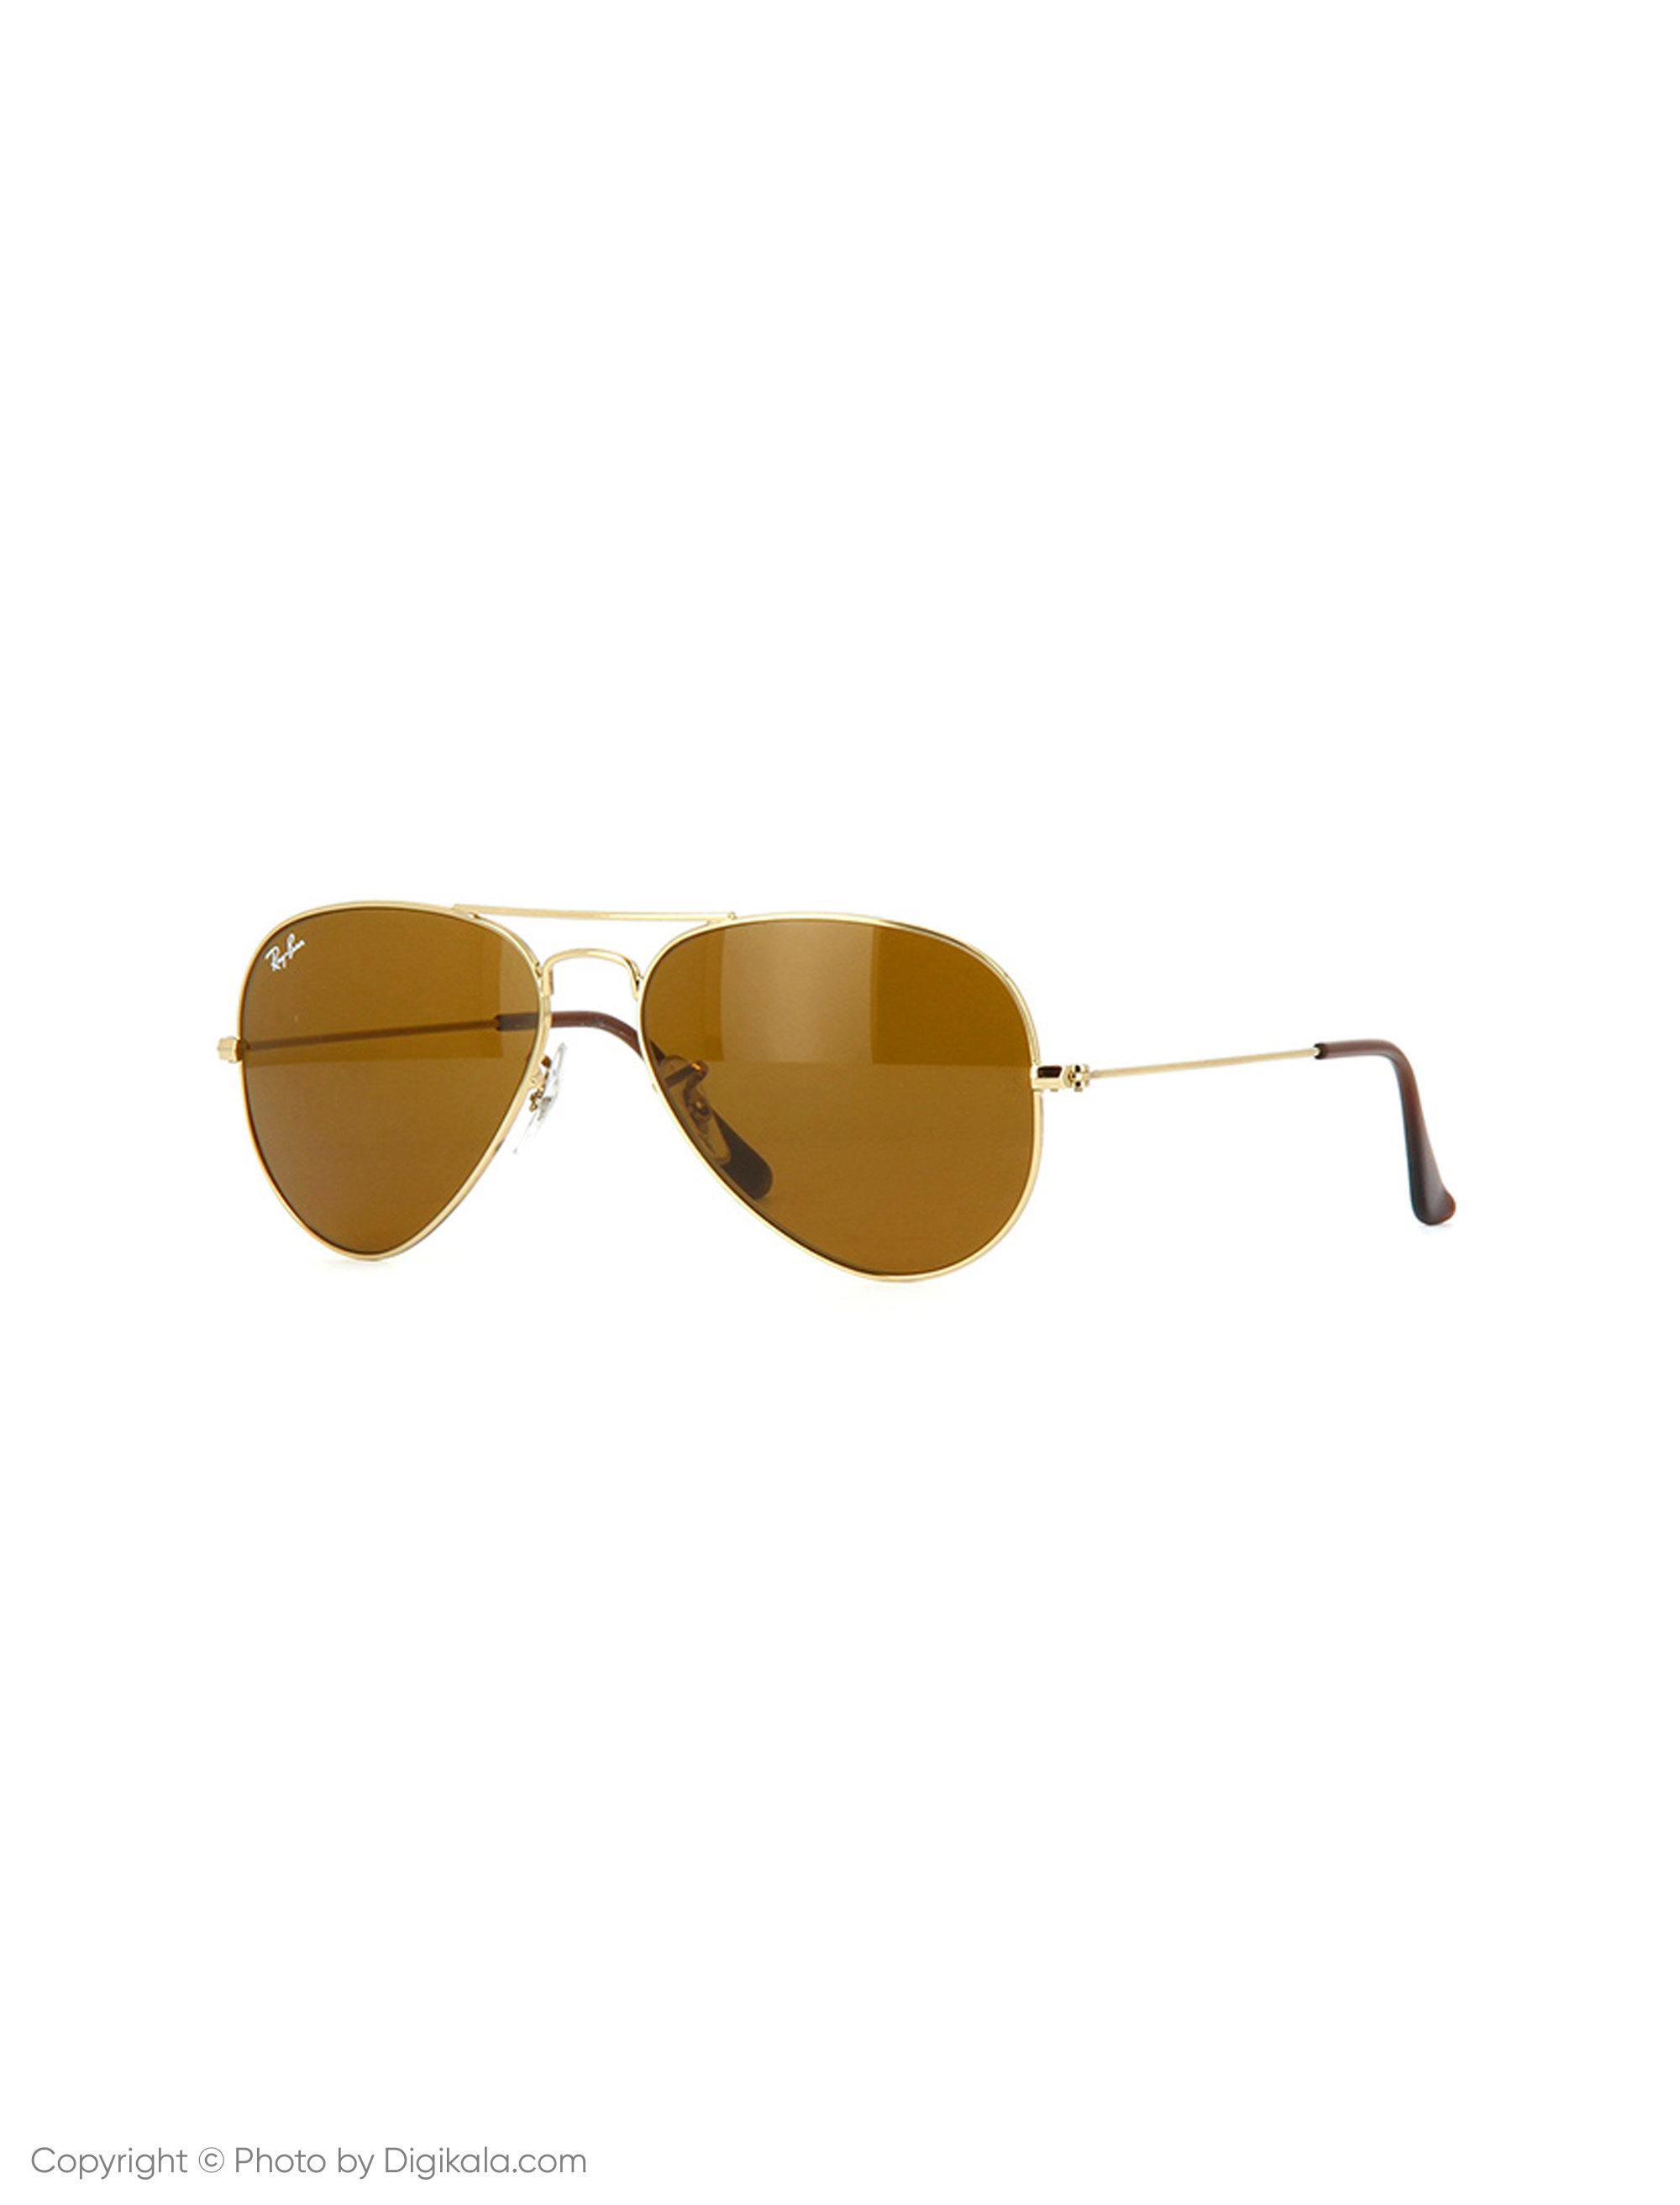 عینک آفتابی ری بن مدل 3025-001/33-58 - طلایی - 3